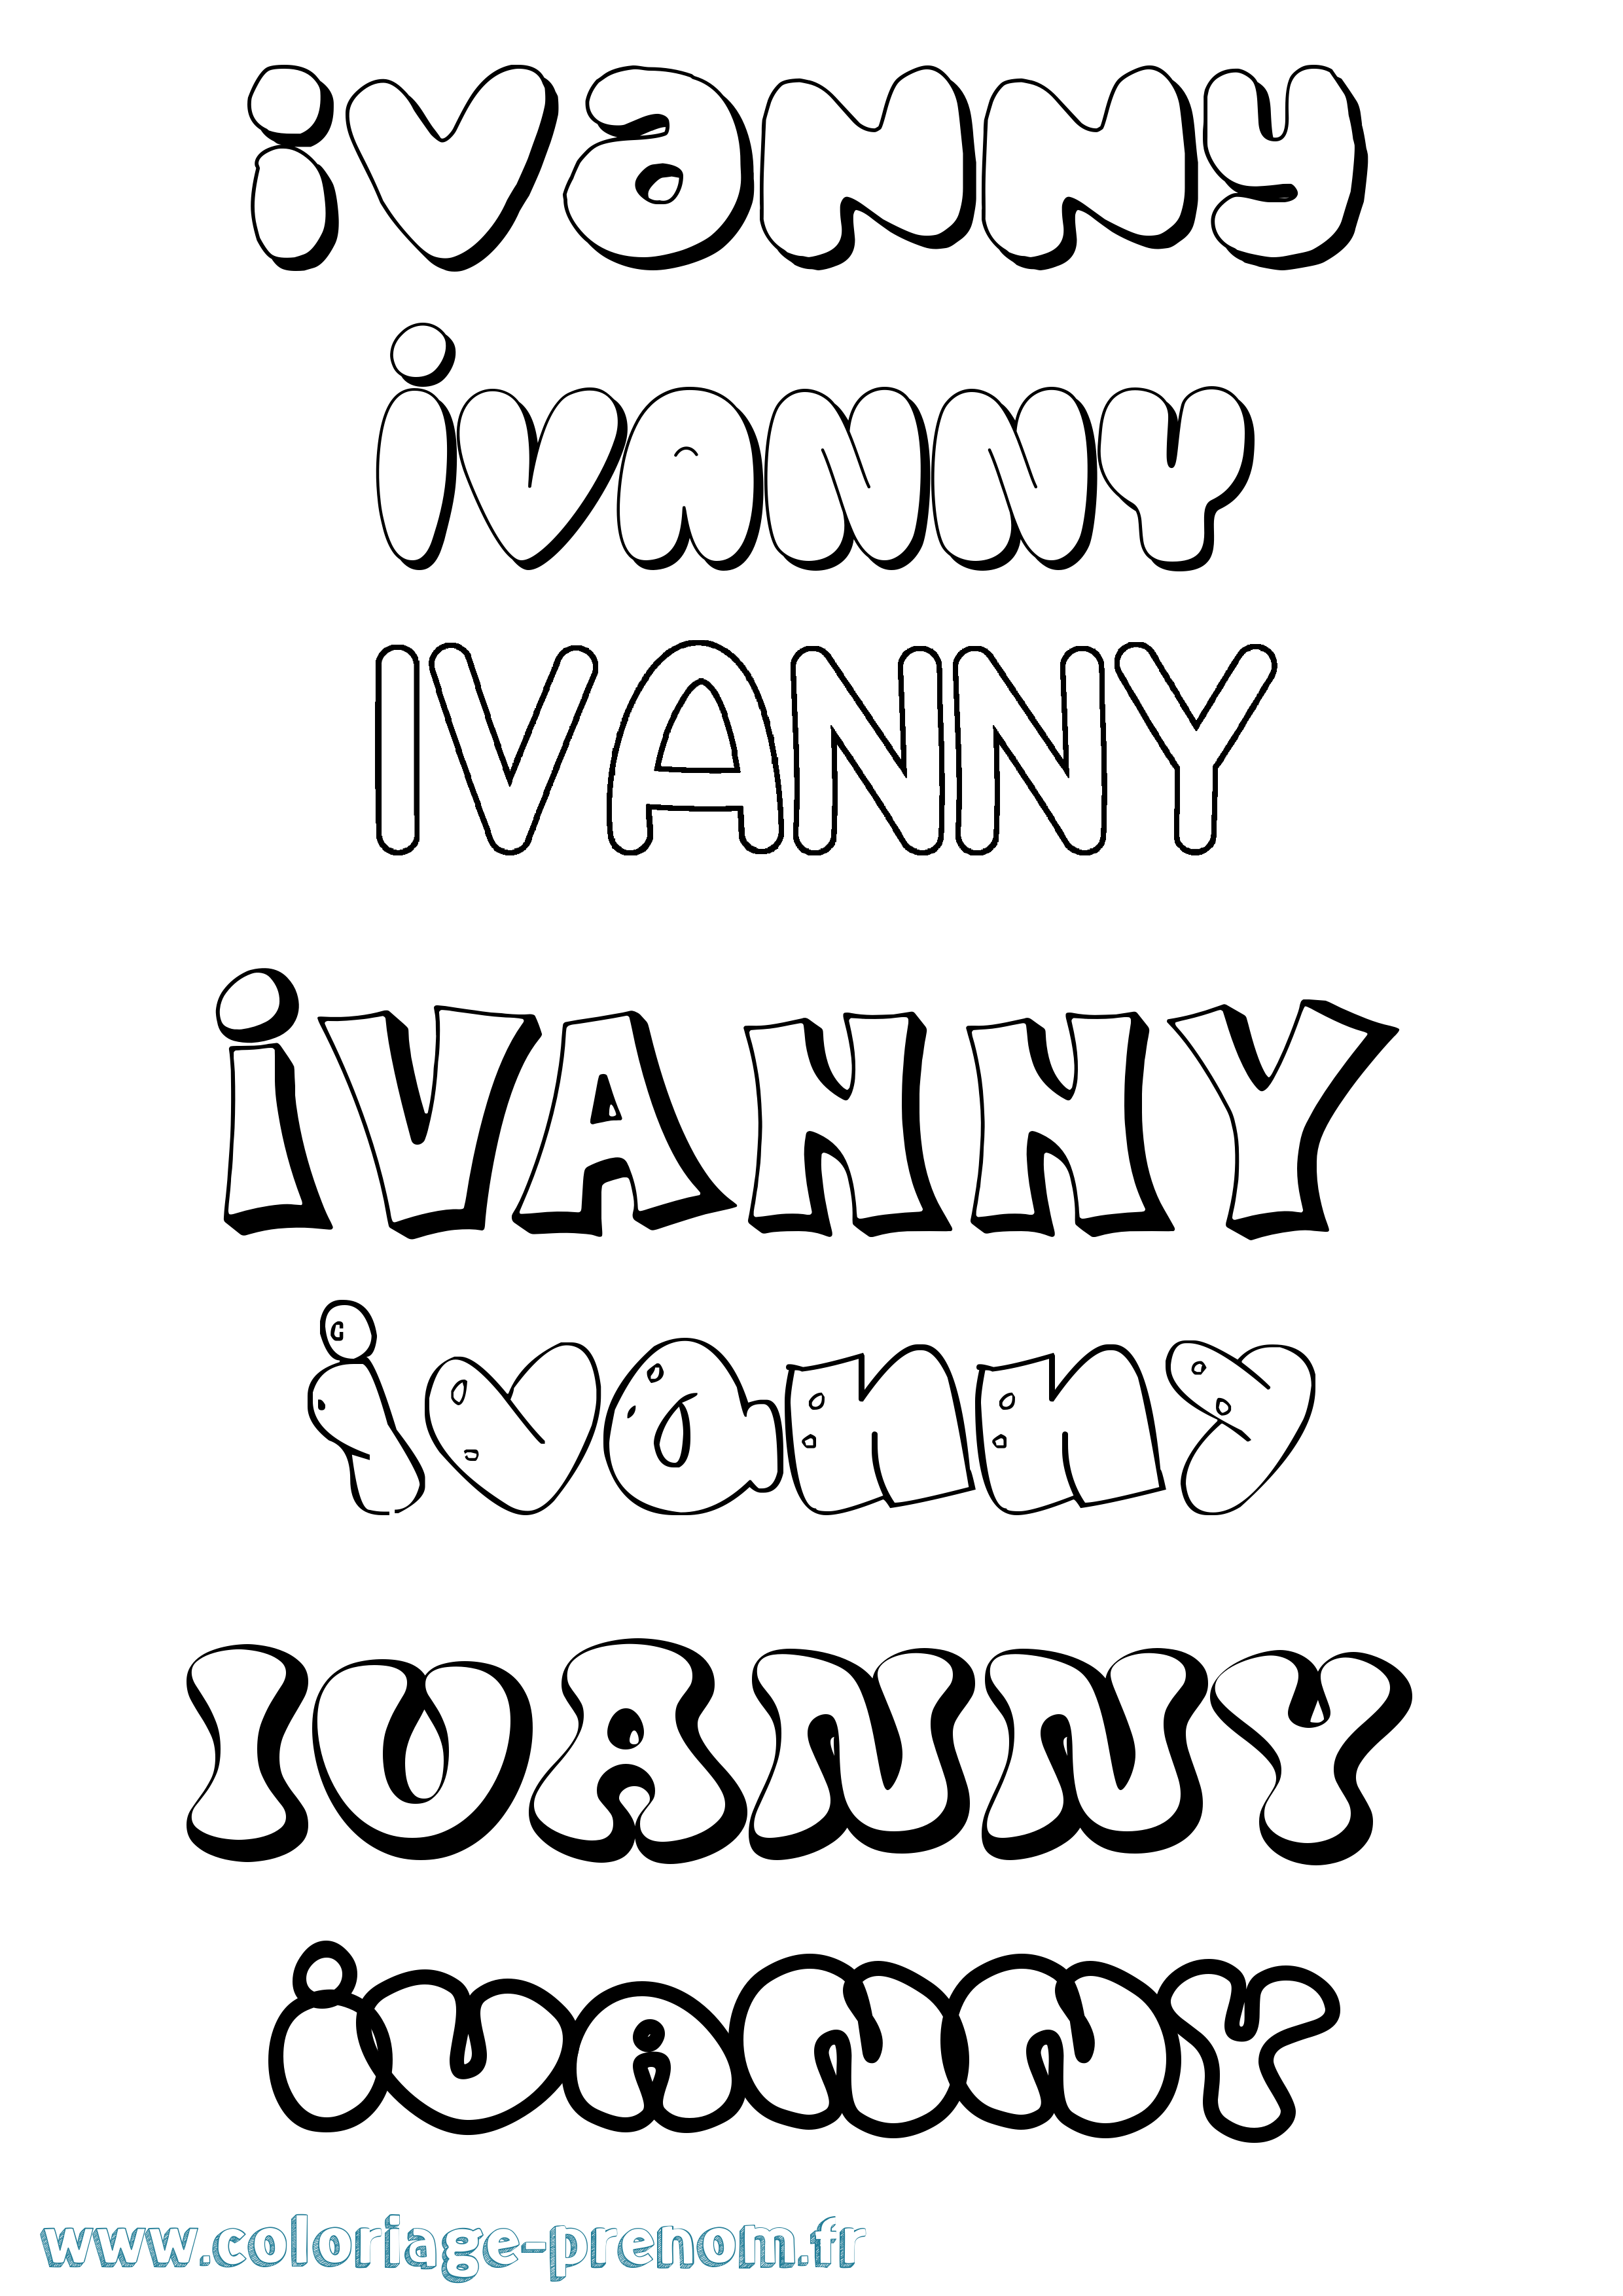 Coloriage prénom Ivanny Bubble